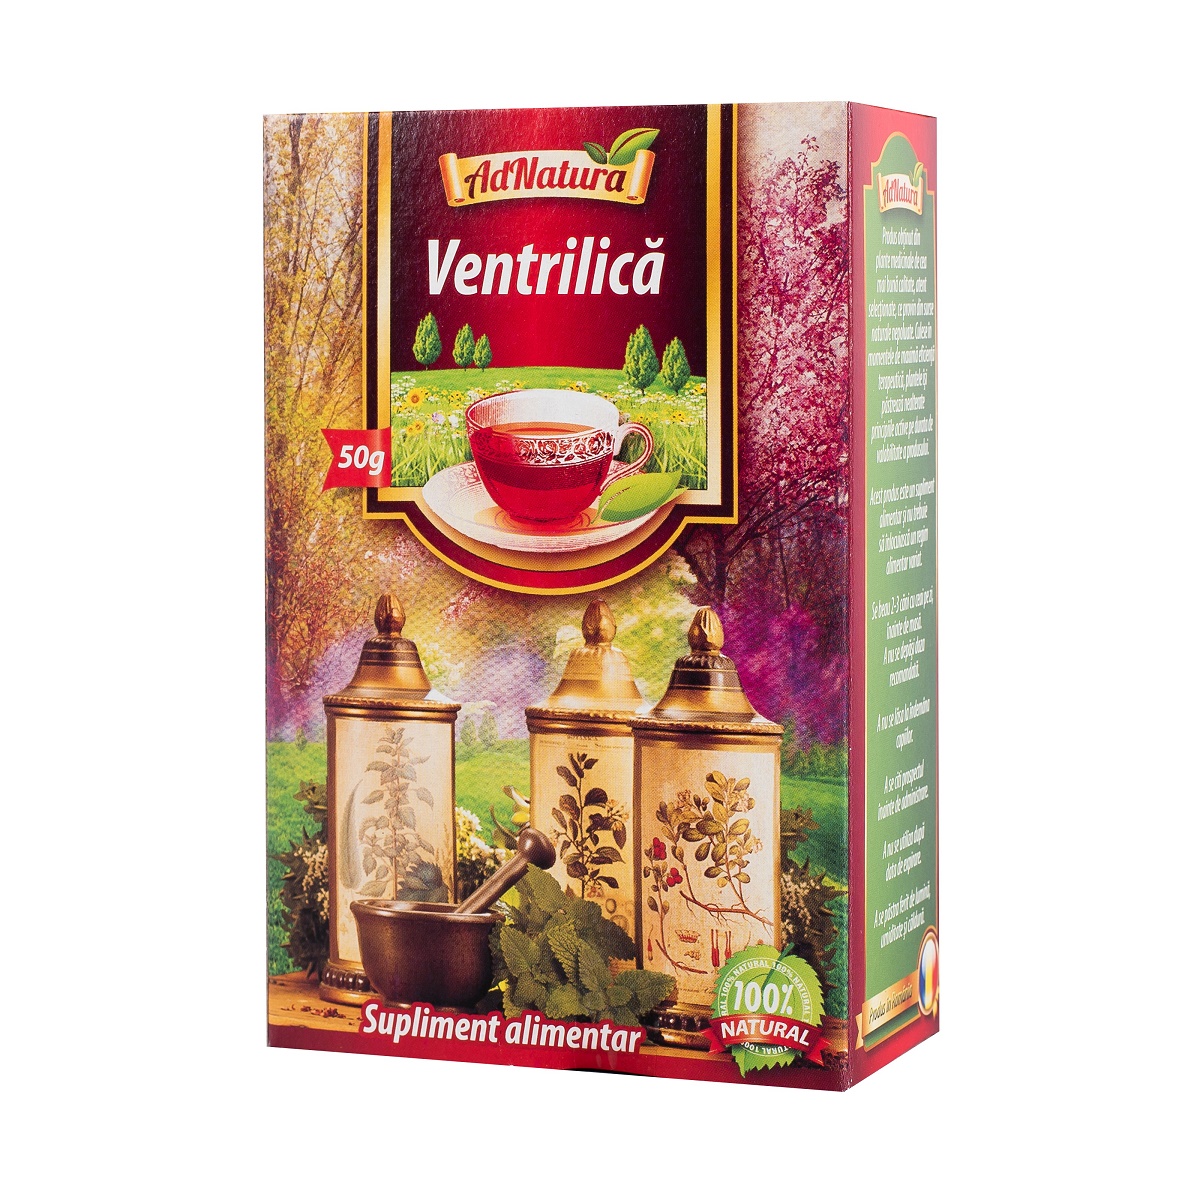 Ceai de Ventrilica, 50 g, AdNatura